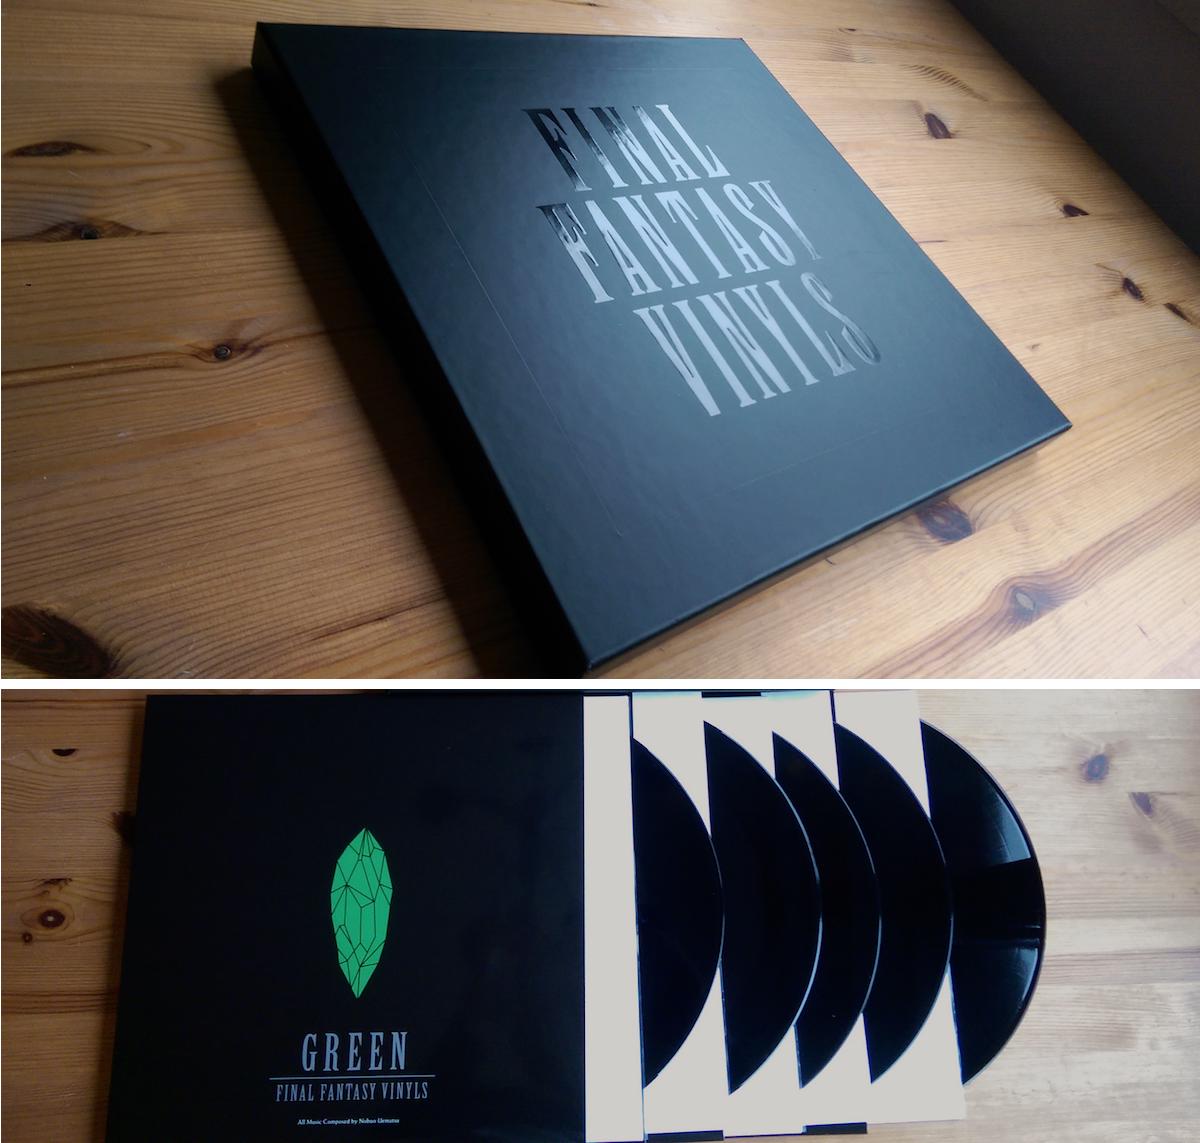 Final Fantasy Vinyls 5xLP box set